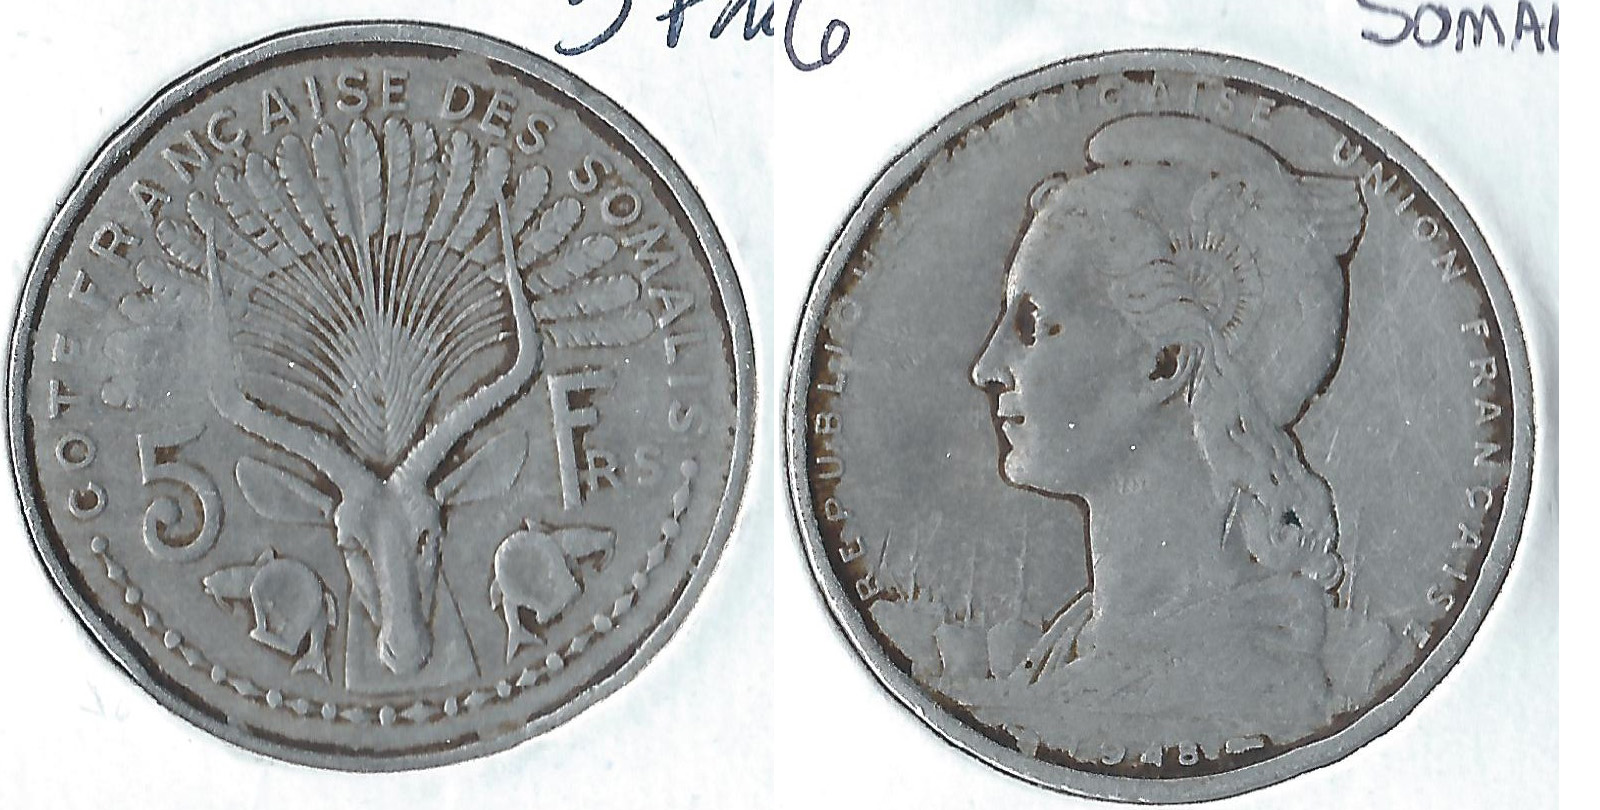 1948 french somalia 5 francs.jpg